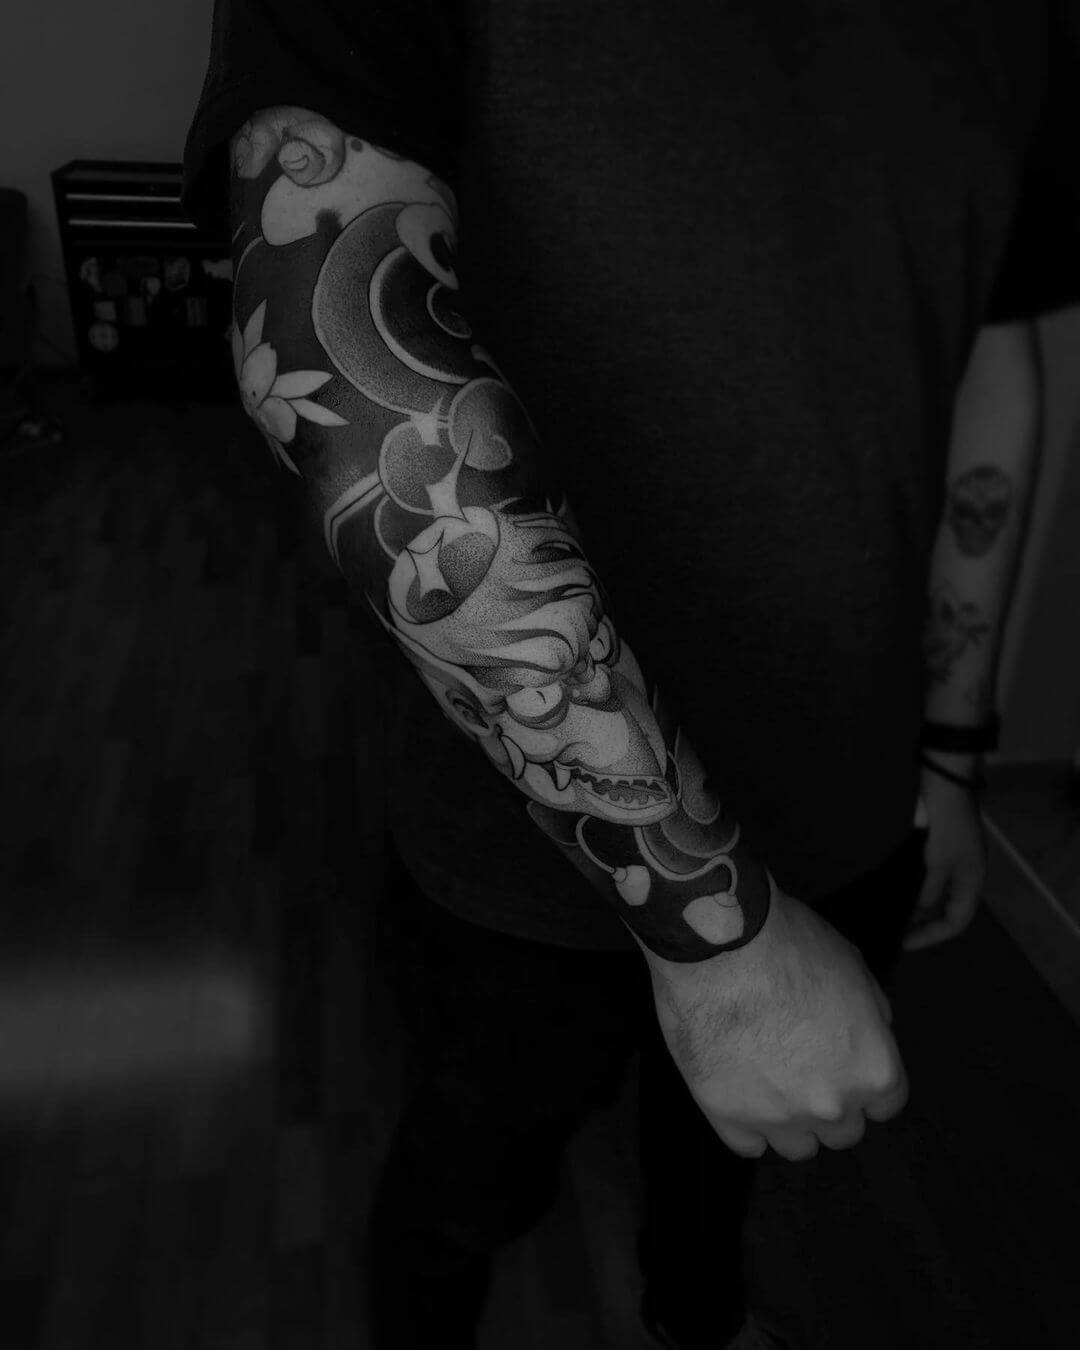 Dotwork tattoo sleeve design for men